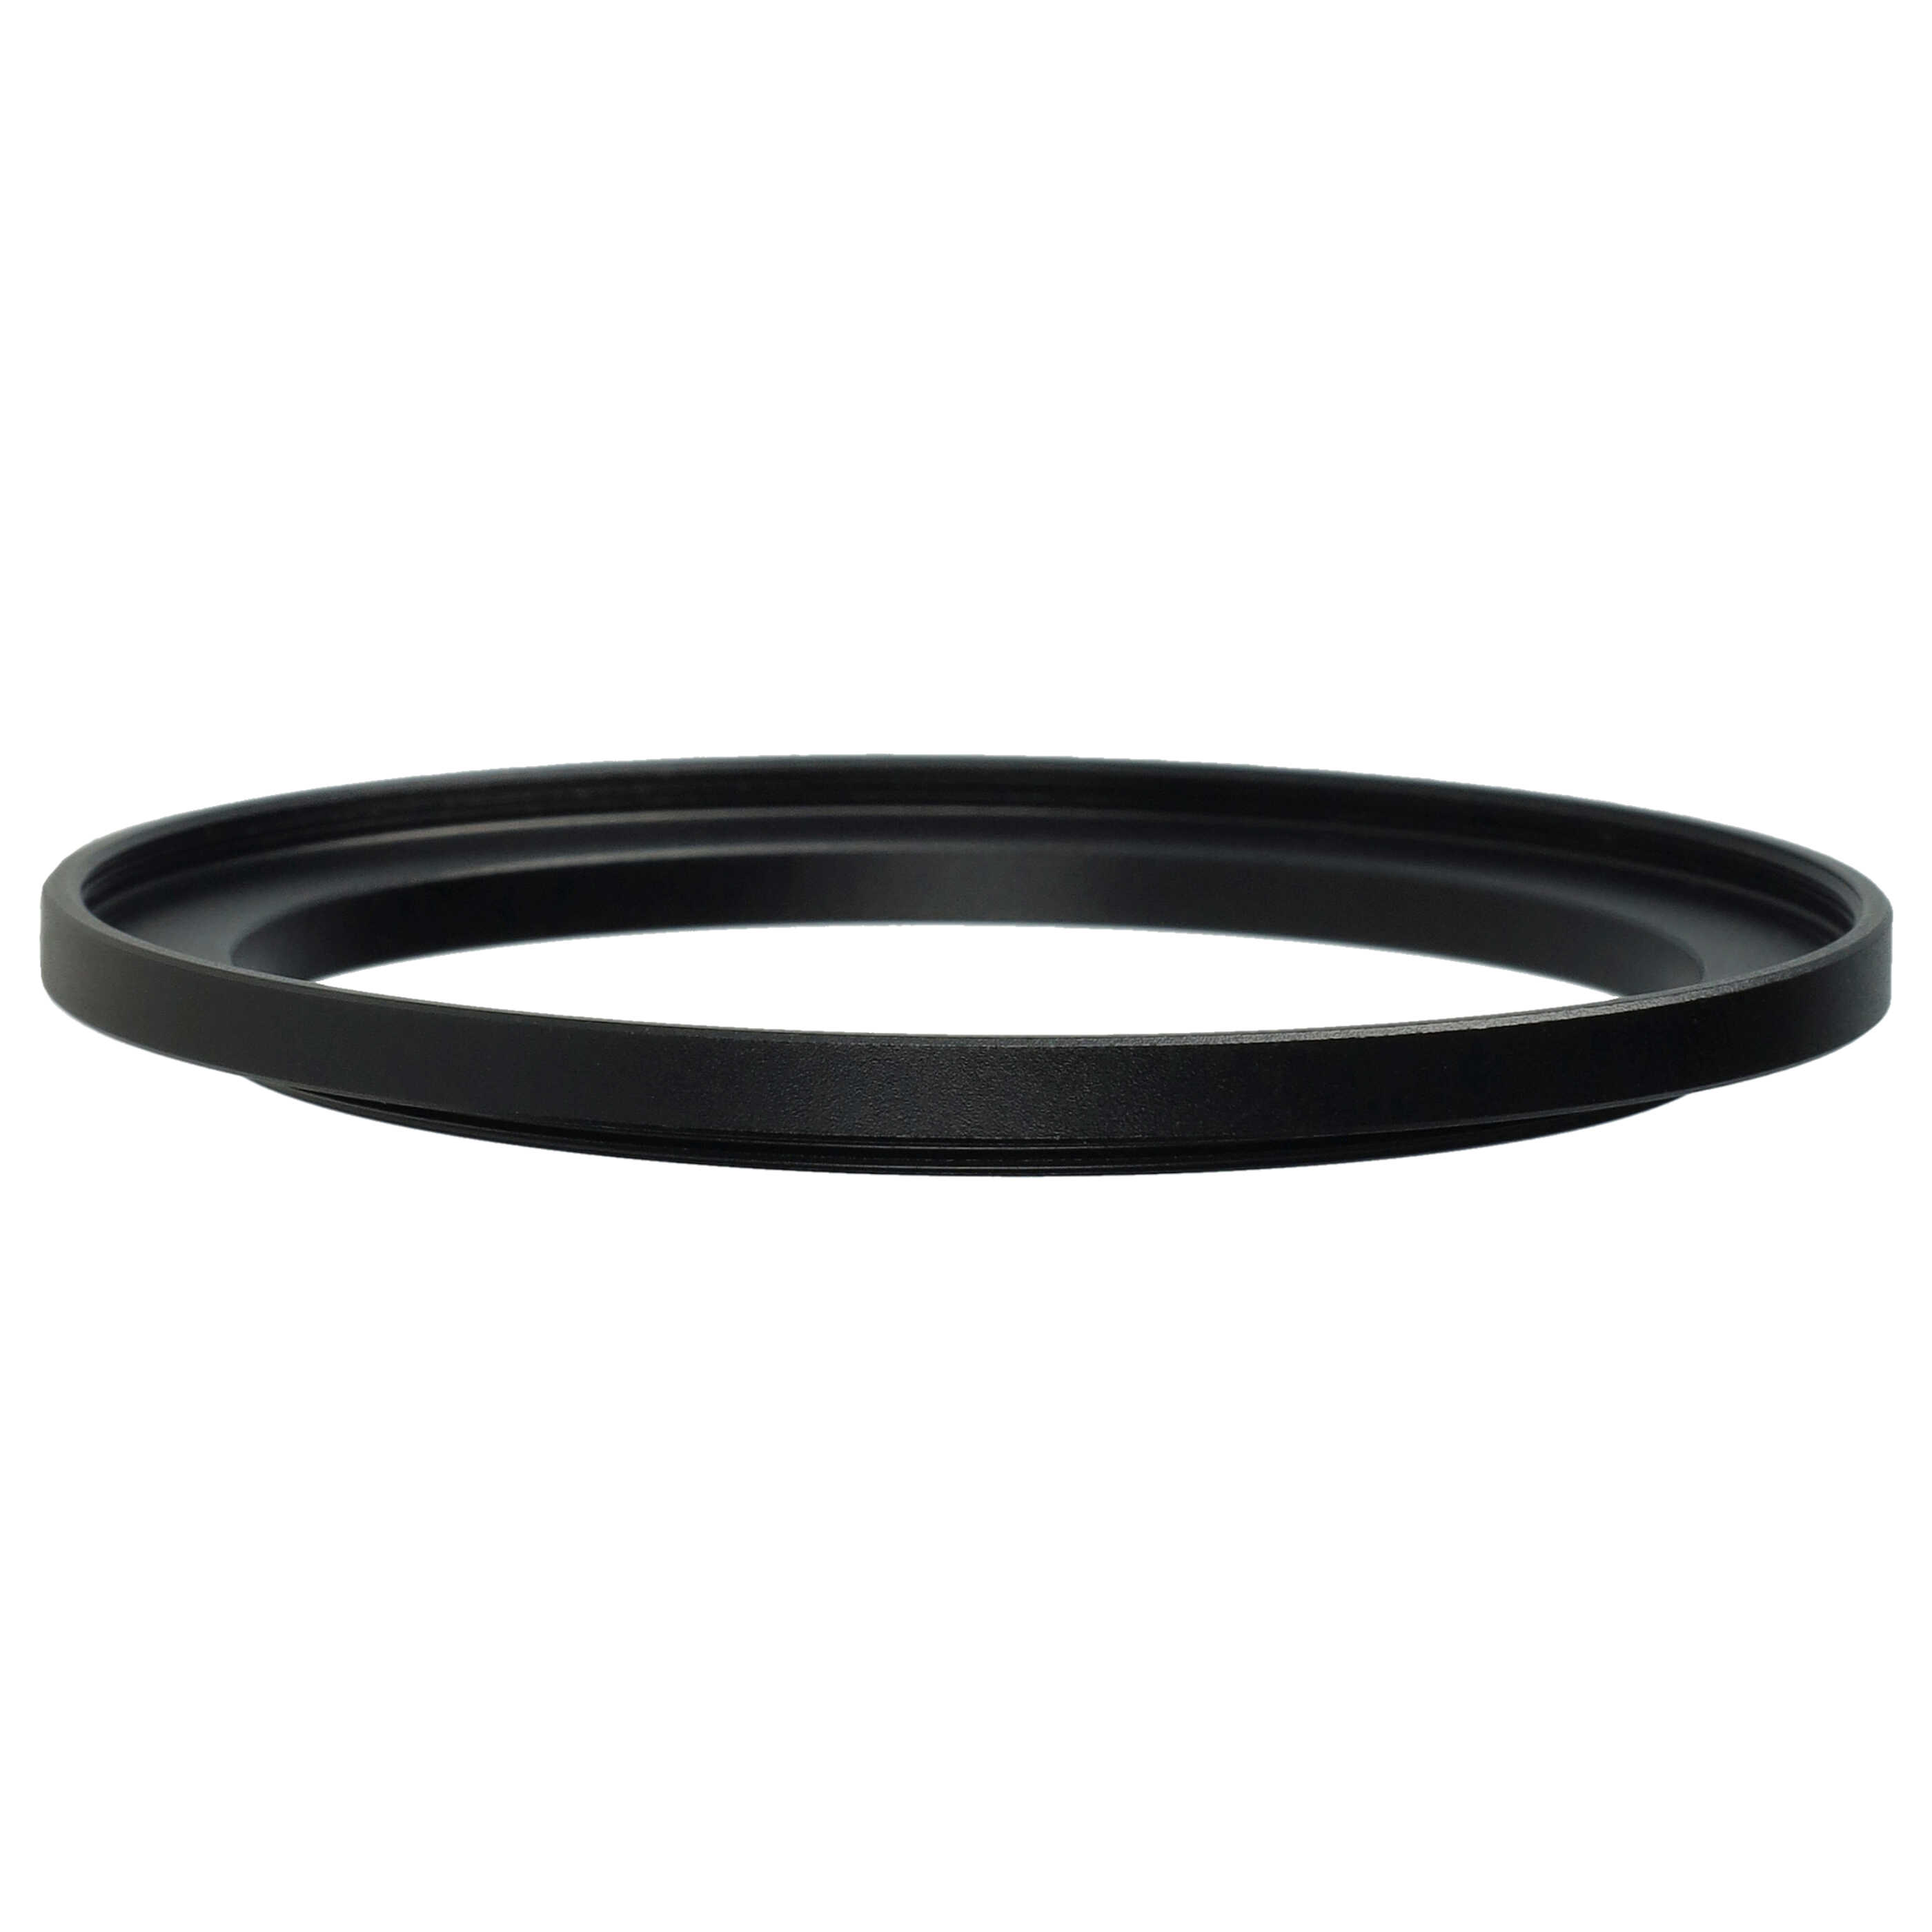 Step-Up-Ring Adapter 62 mm auf 72 mm passend für diverse Kamera-Objektive - Filteradapter